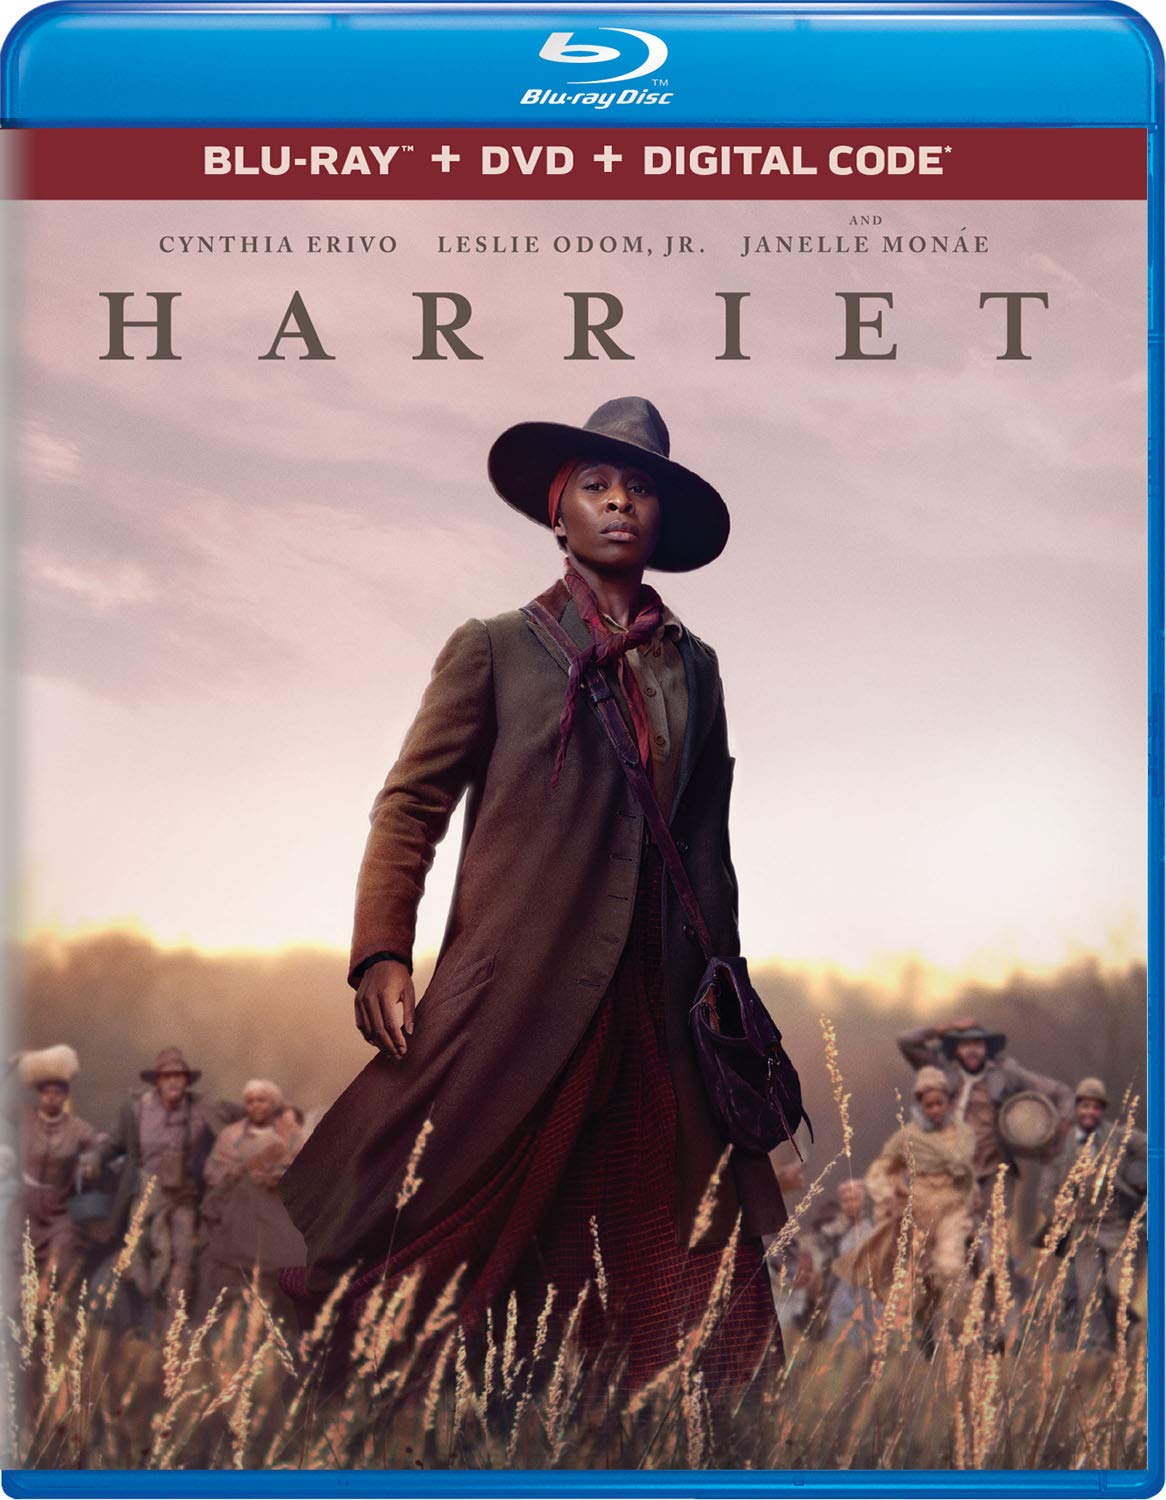 Harriet DVD Release Date January 28, 2020